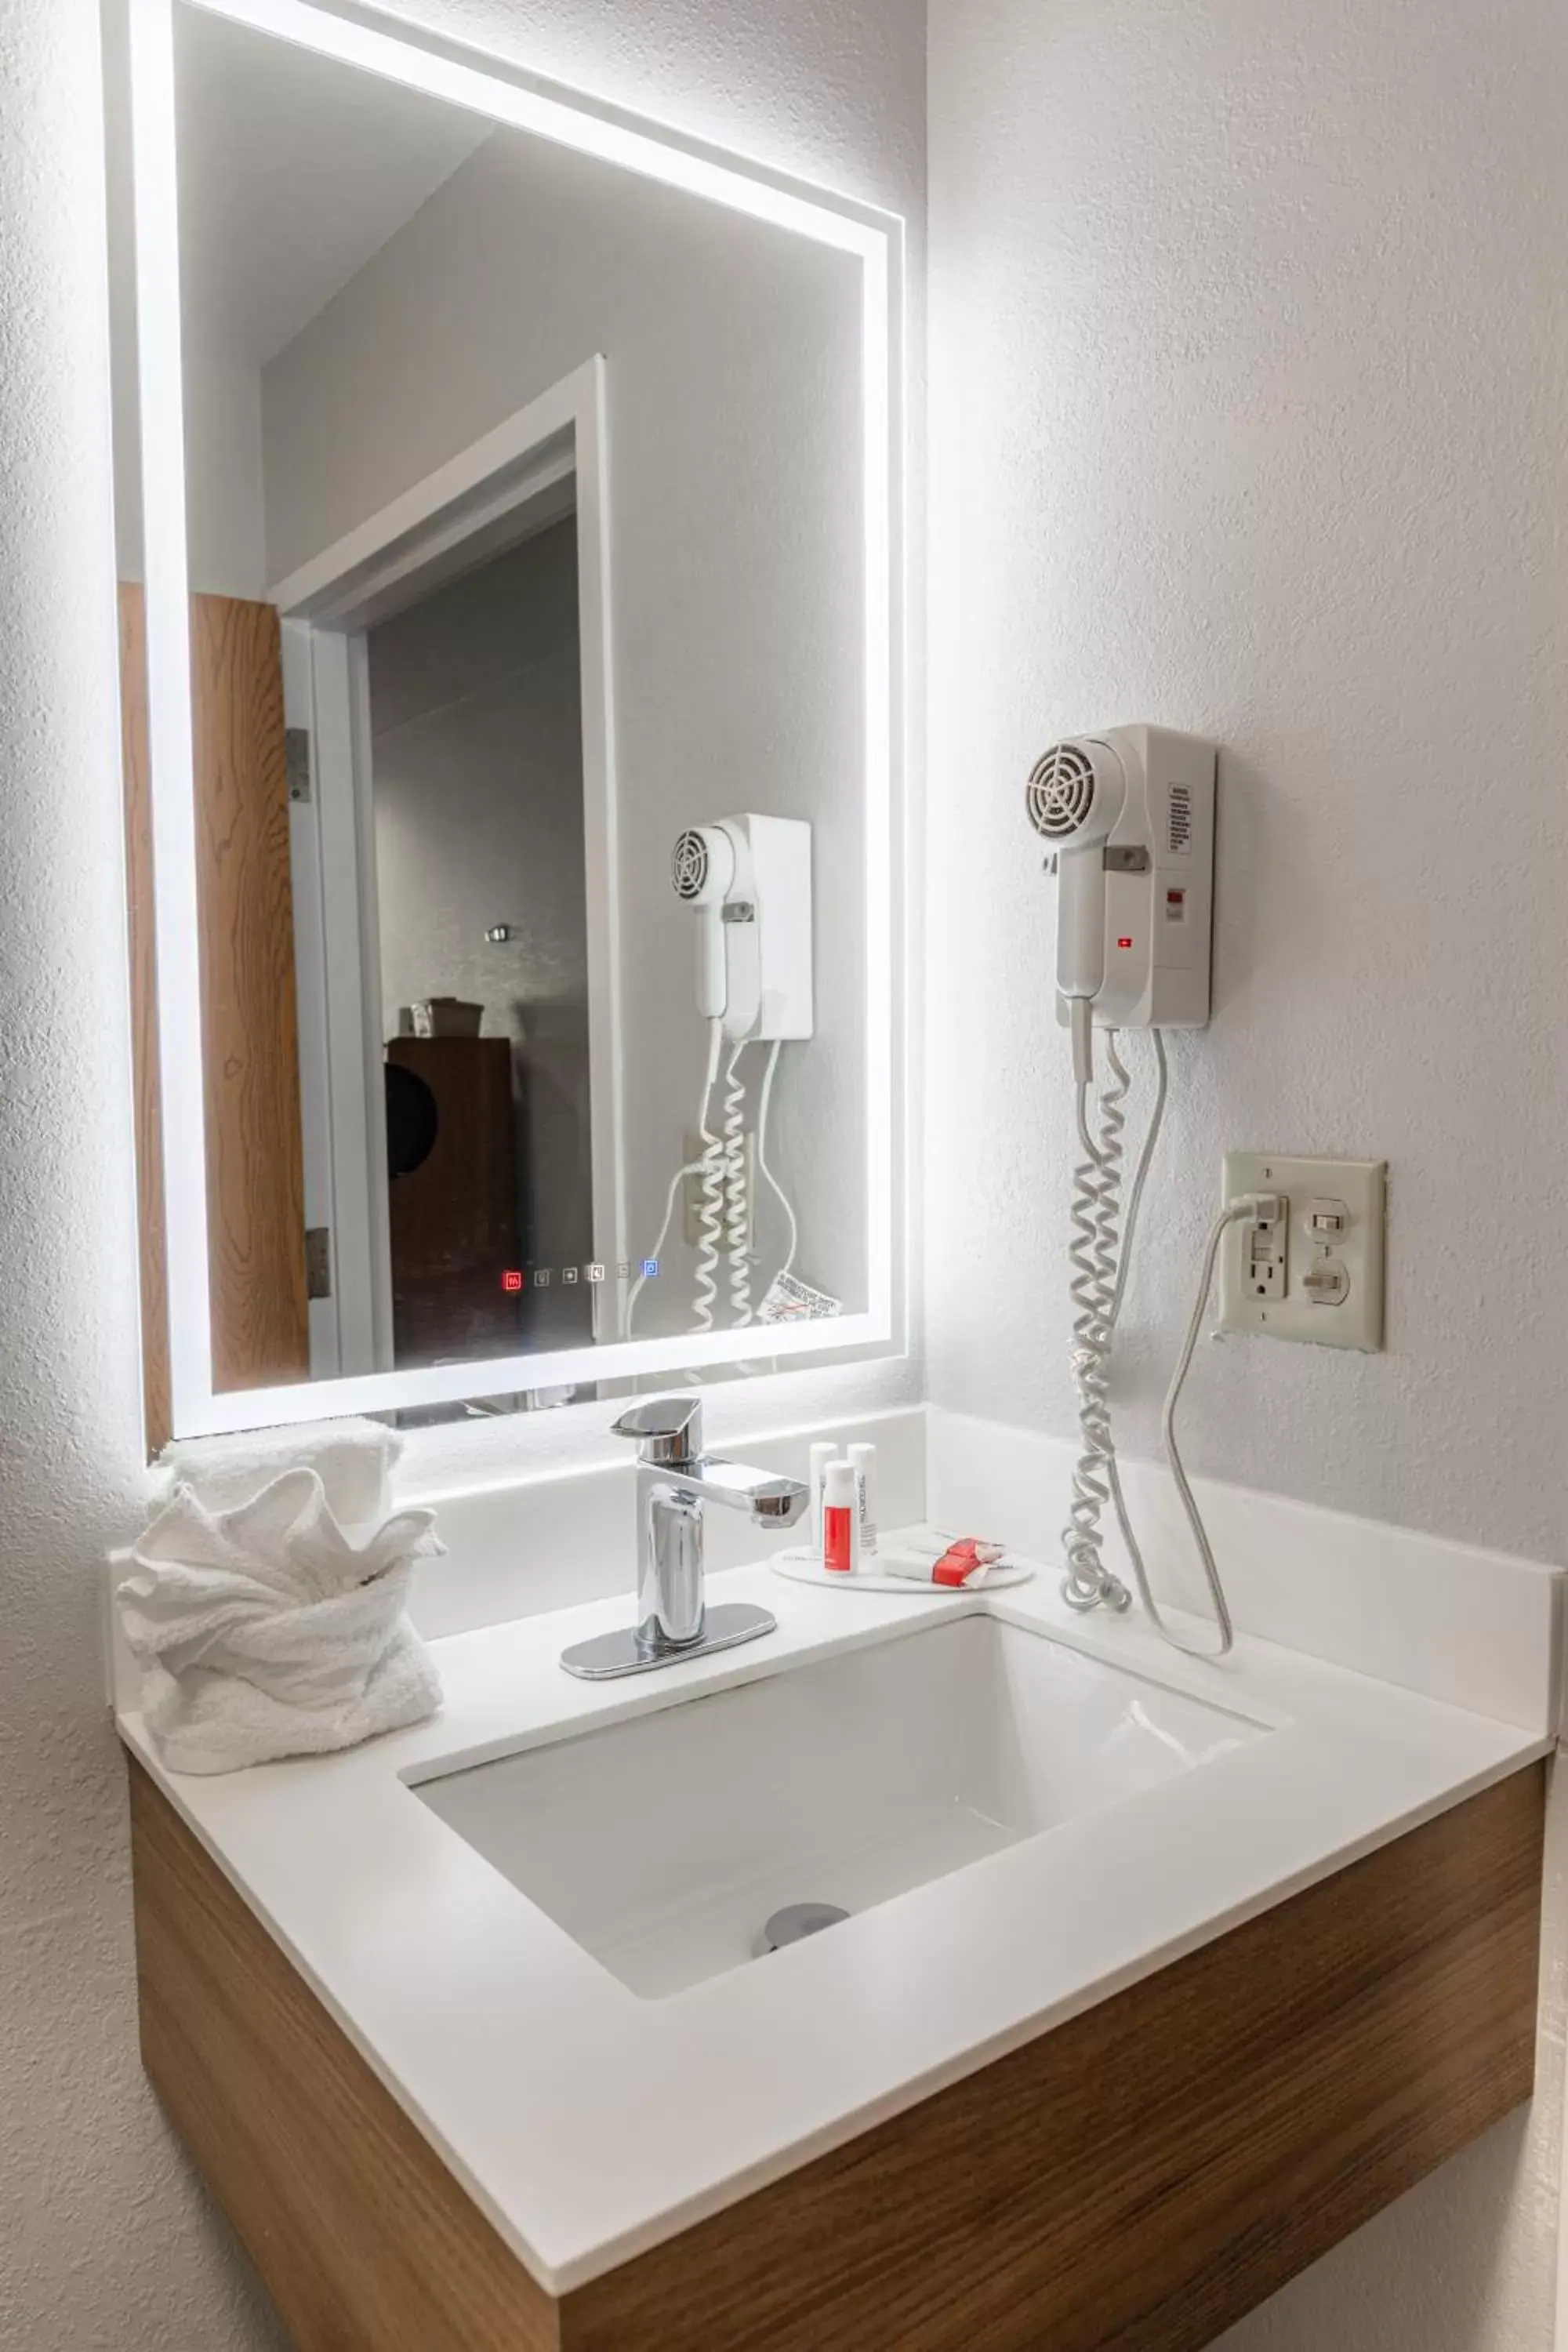 heating, Bathroom in Microtel Inn & Suites by Wyndham Kingsland